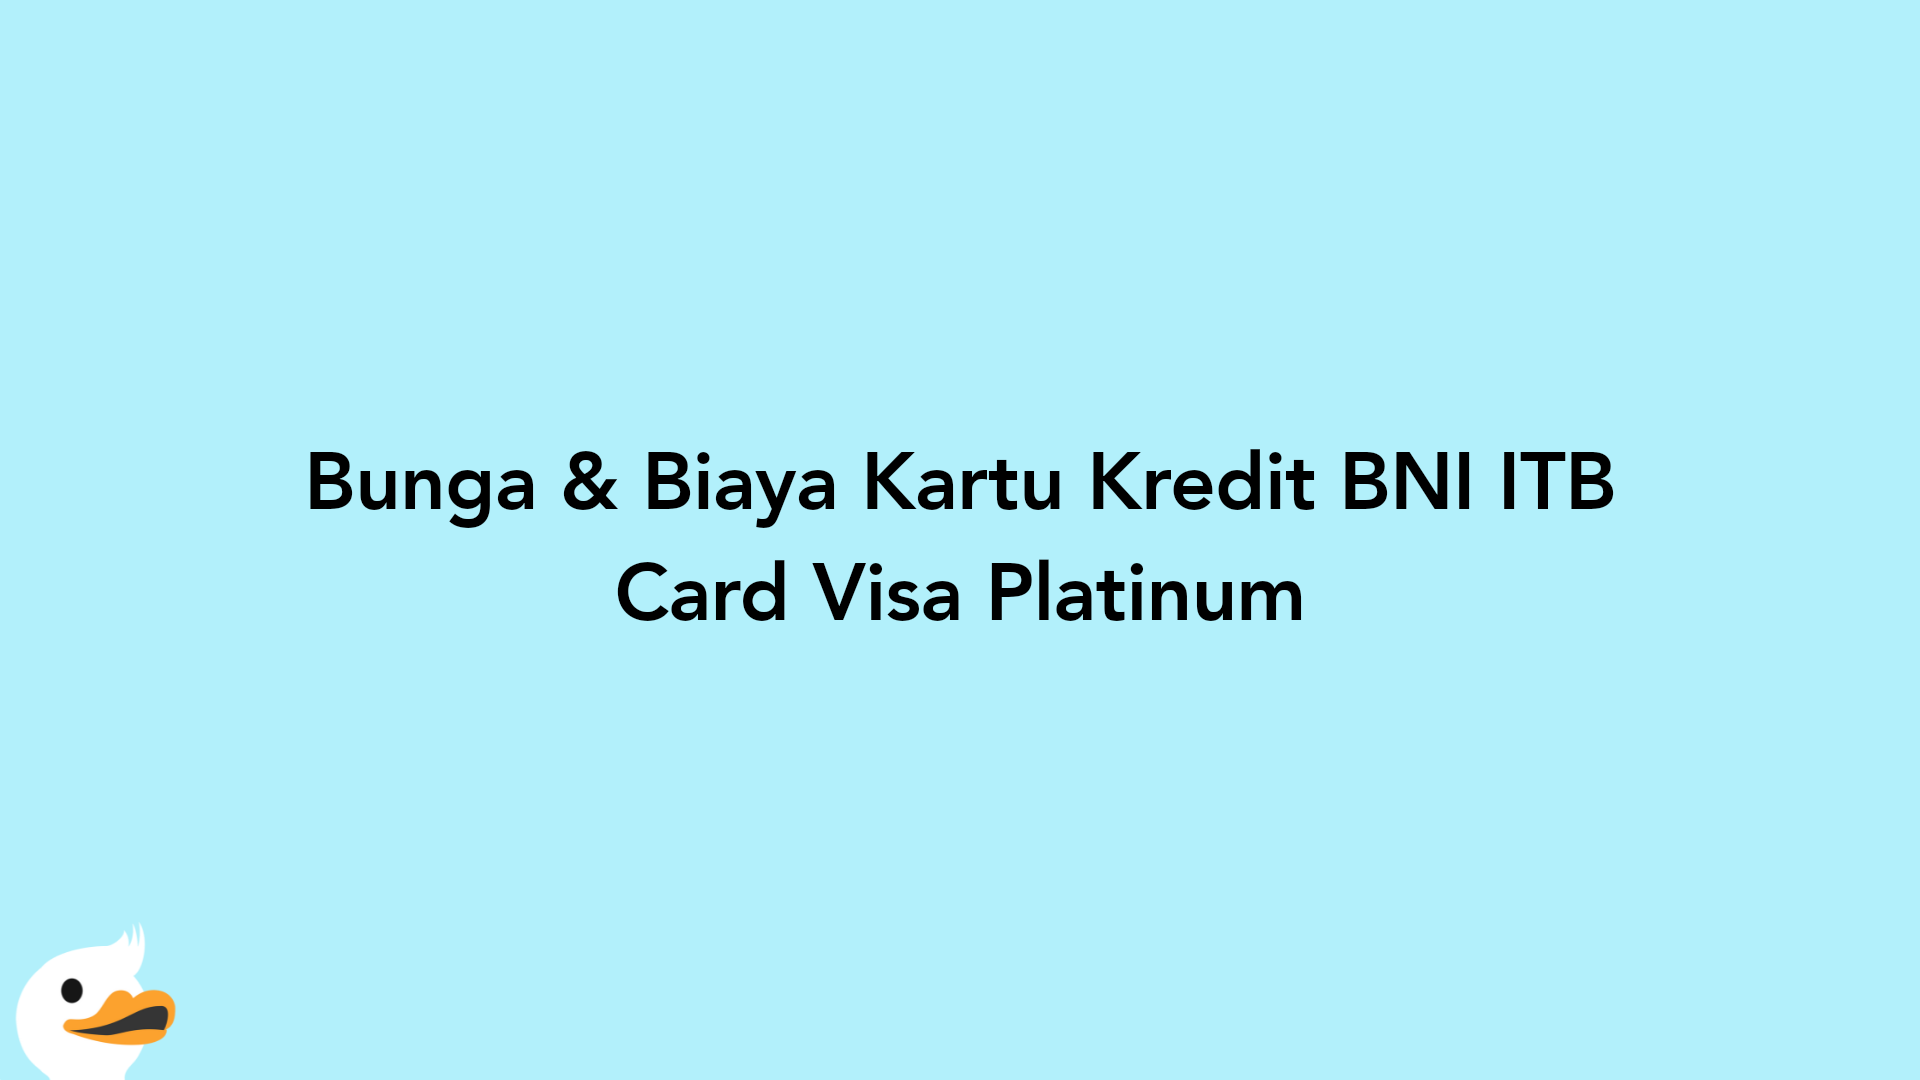 Bunga & Biaya Kartu Kredit BNI ITB Card Visa Platinum